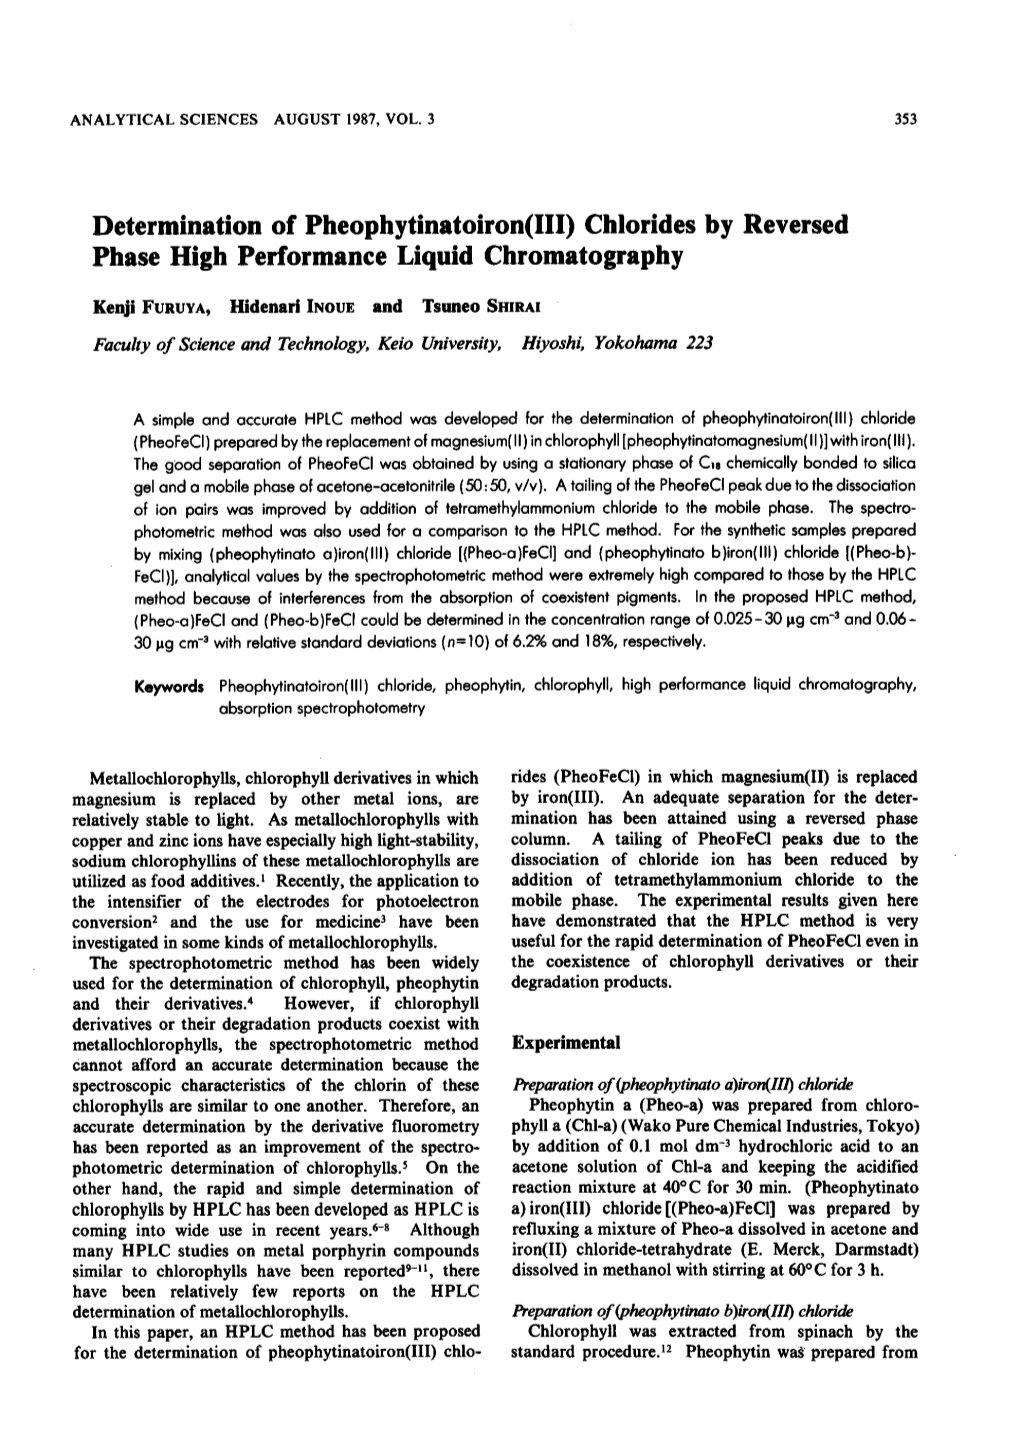 Determination of Pheophytinatoiron (III) Chlorides by Reversed Phase